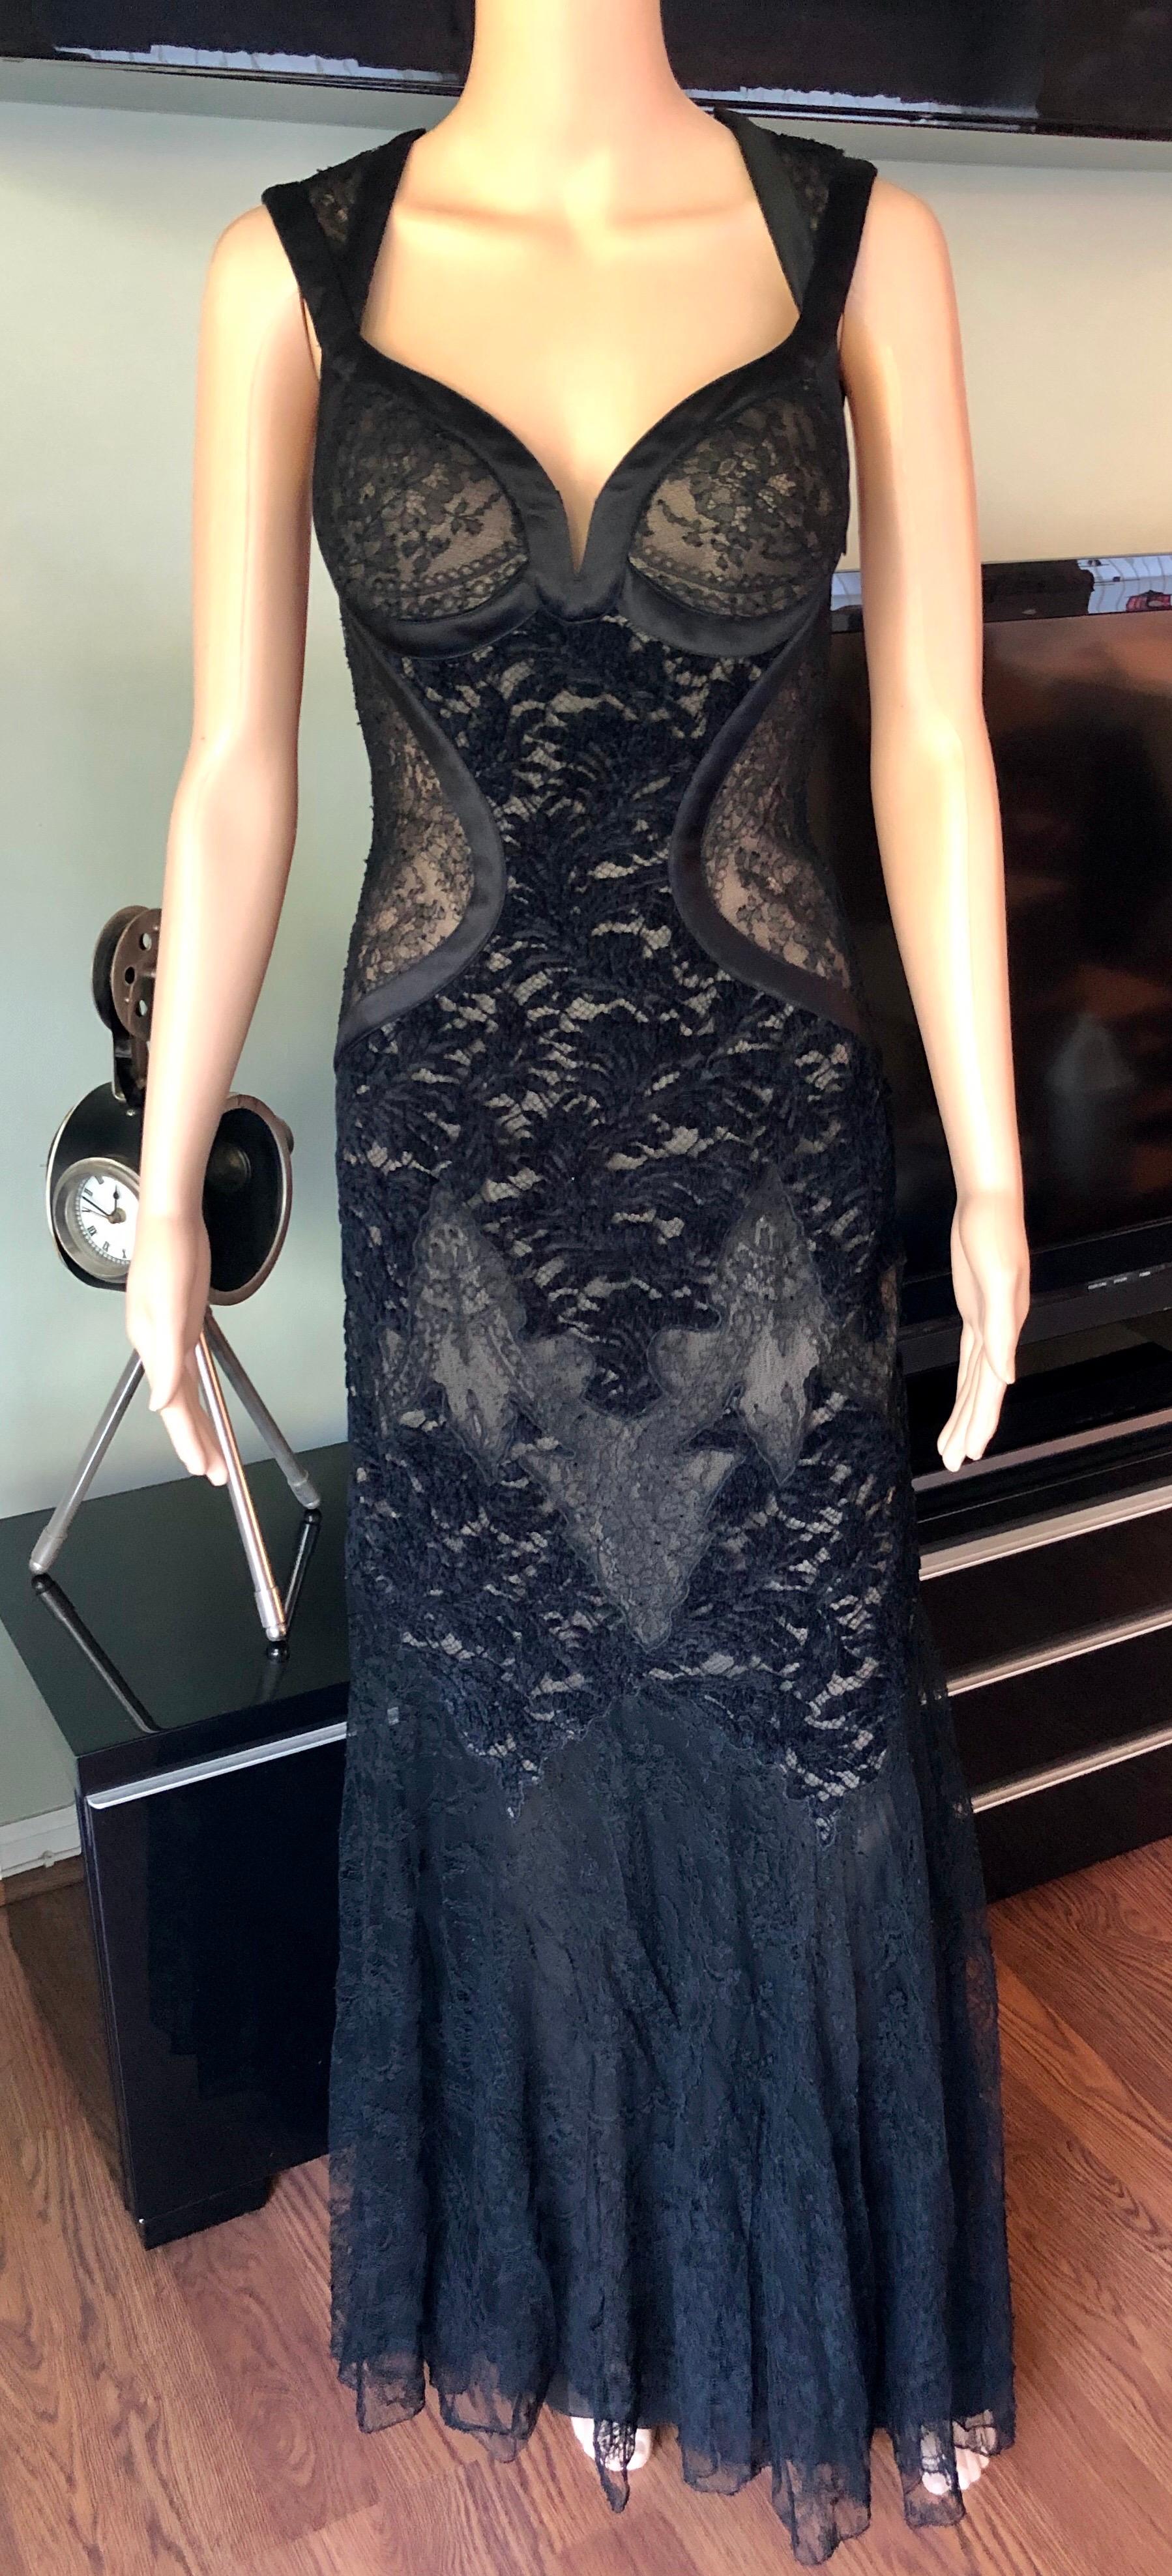 Versace F/W 2005 Laufsteg Bustier Transparente Spitze Offener Rücken Schwarzes Abendkleid Kleid 

Bitte beachten Sie Größe Tag wurde entfernt, aber dieses Kleid wird wahrscheinlich passen IT 40

